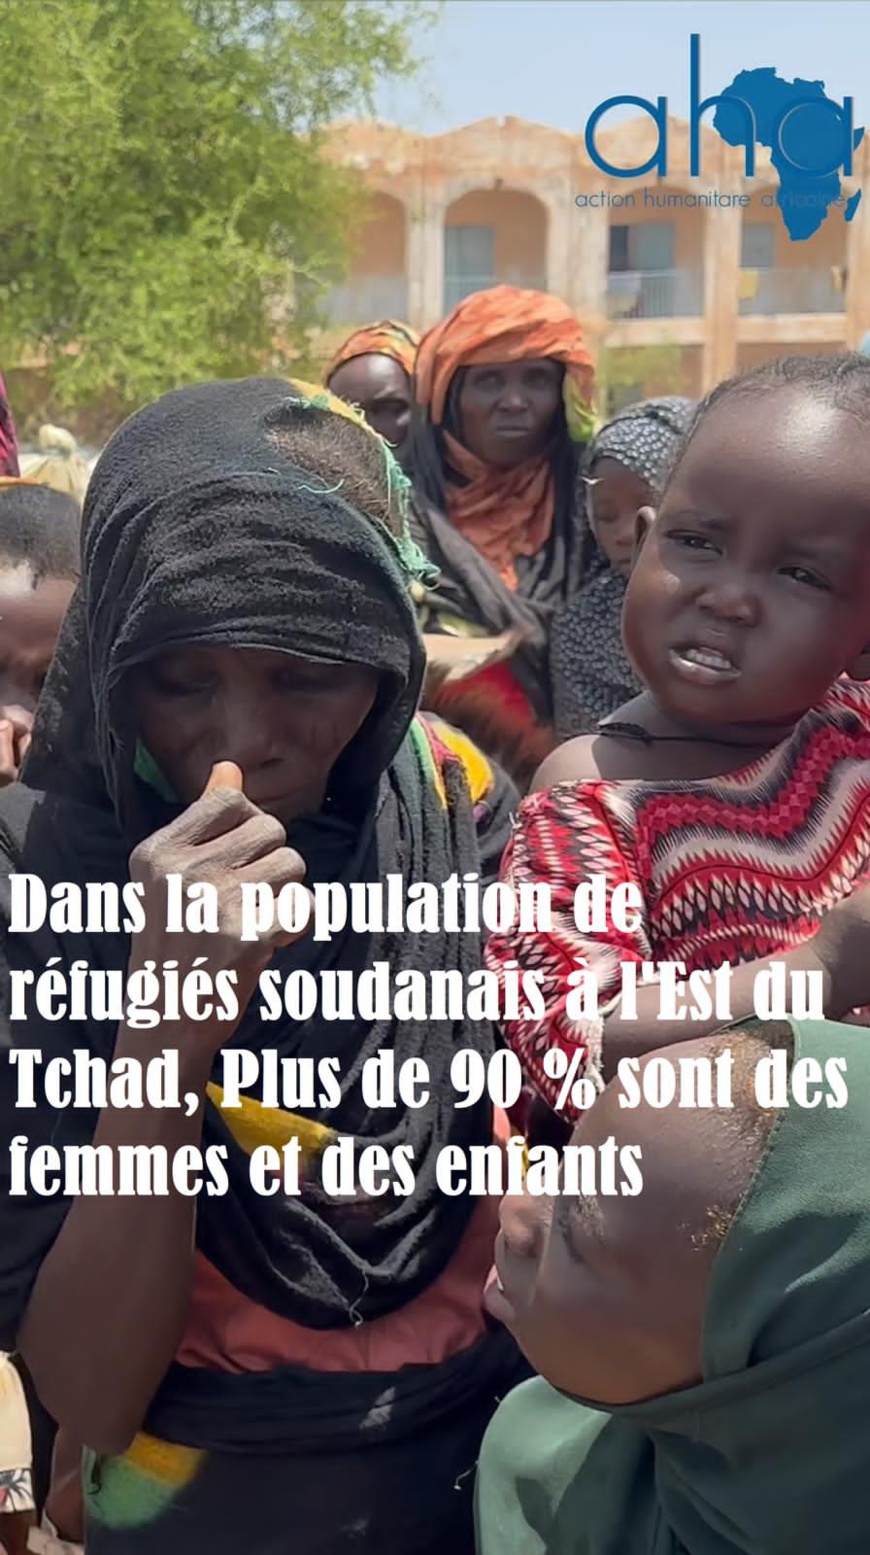 Crise de réfugiés à l'Est du Tchad : appel de l'ONG AHA pour une table ronde de mobilisation de ressources